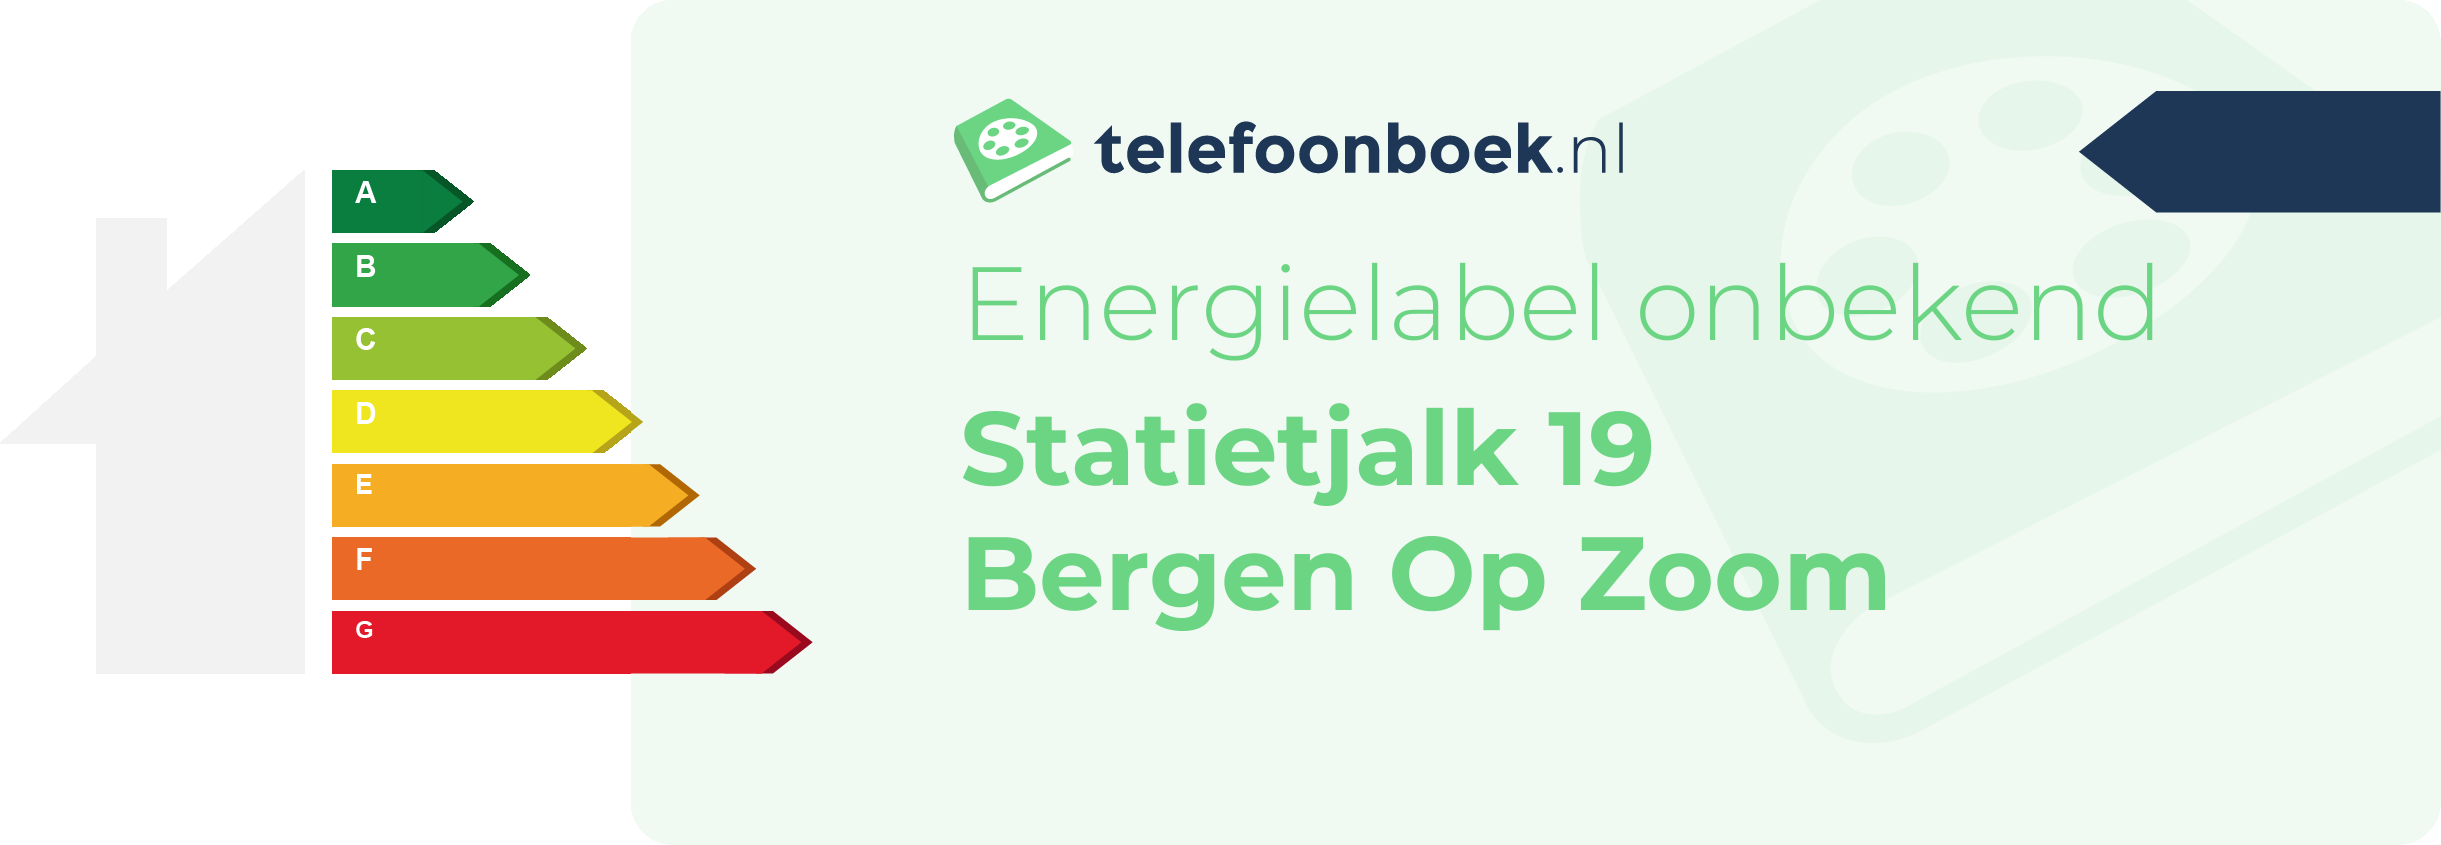 Energielabel Statietjalk 19 Bergen Op Zoom